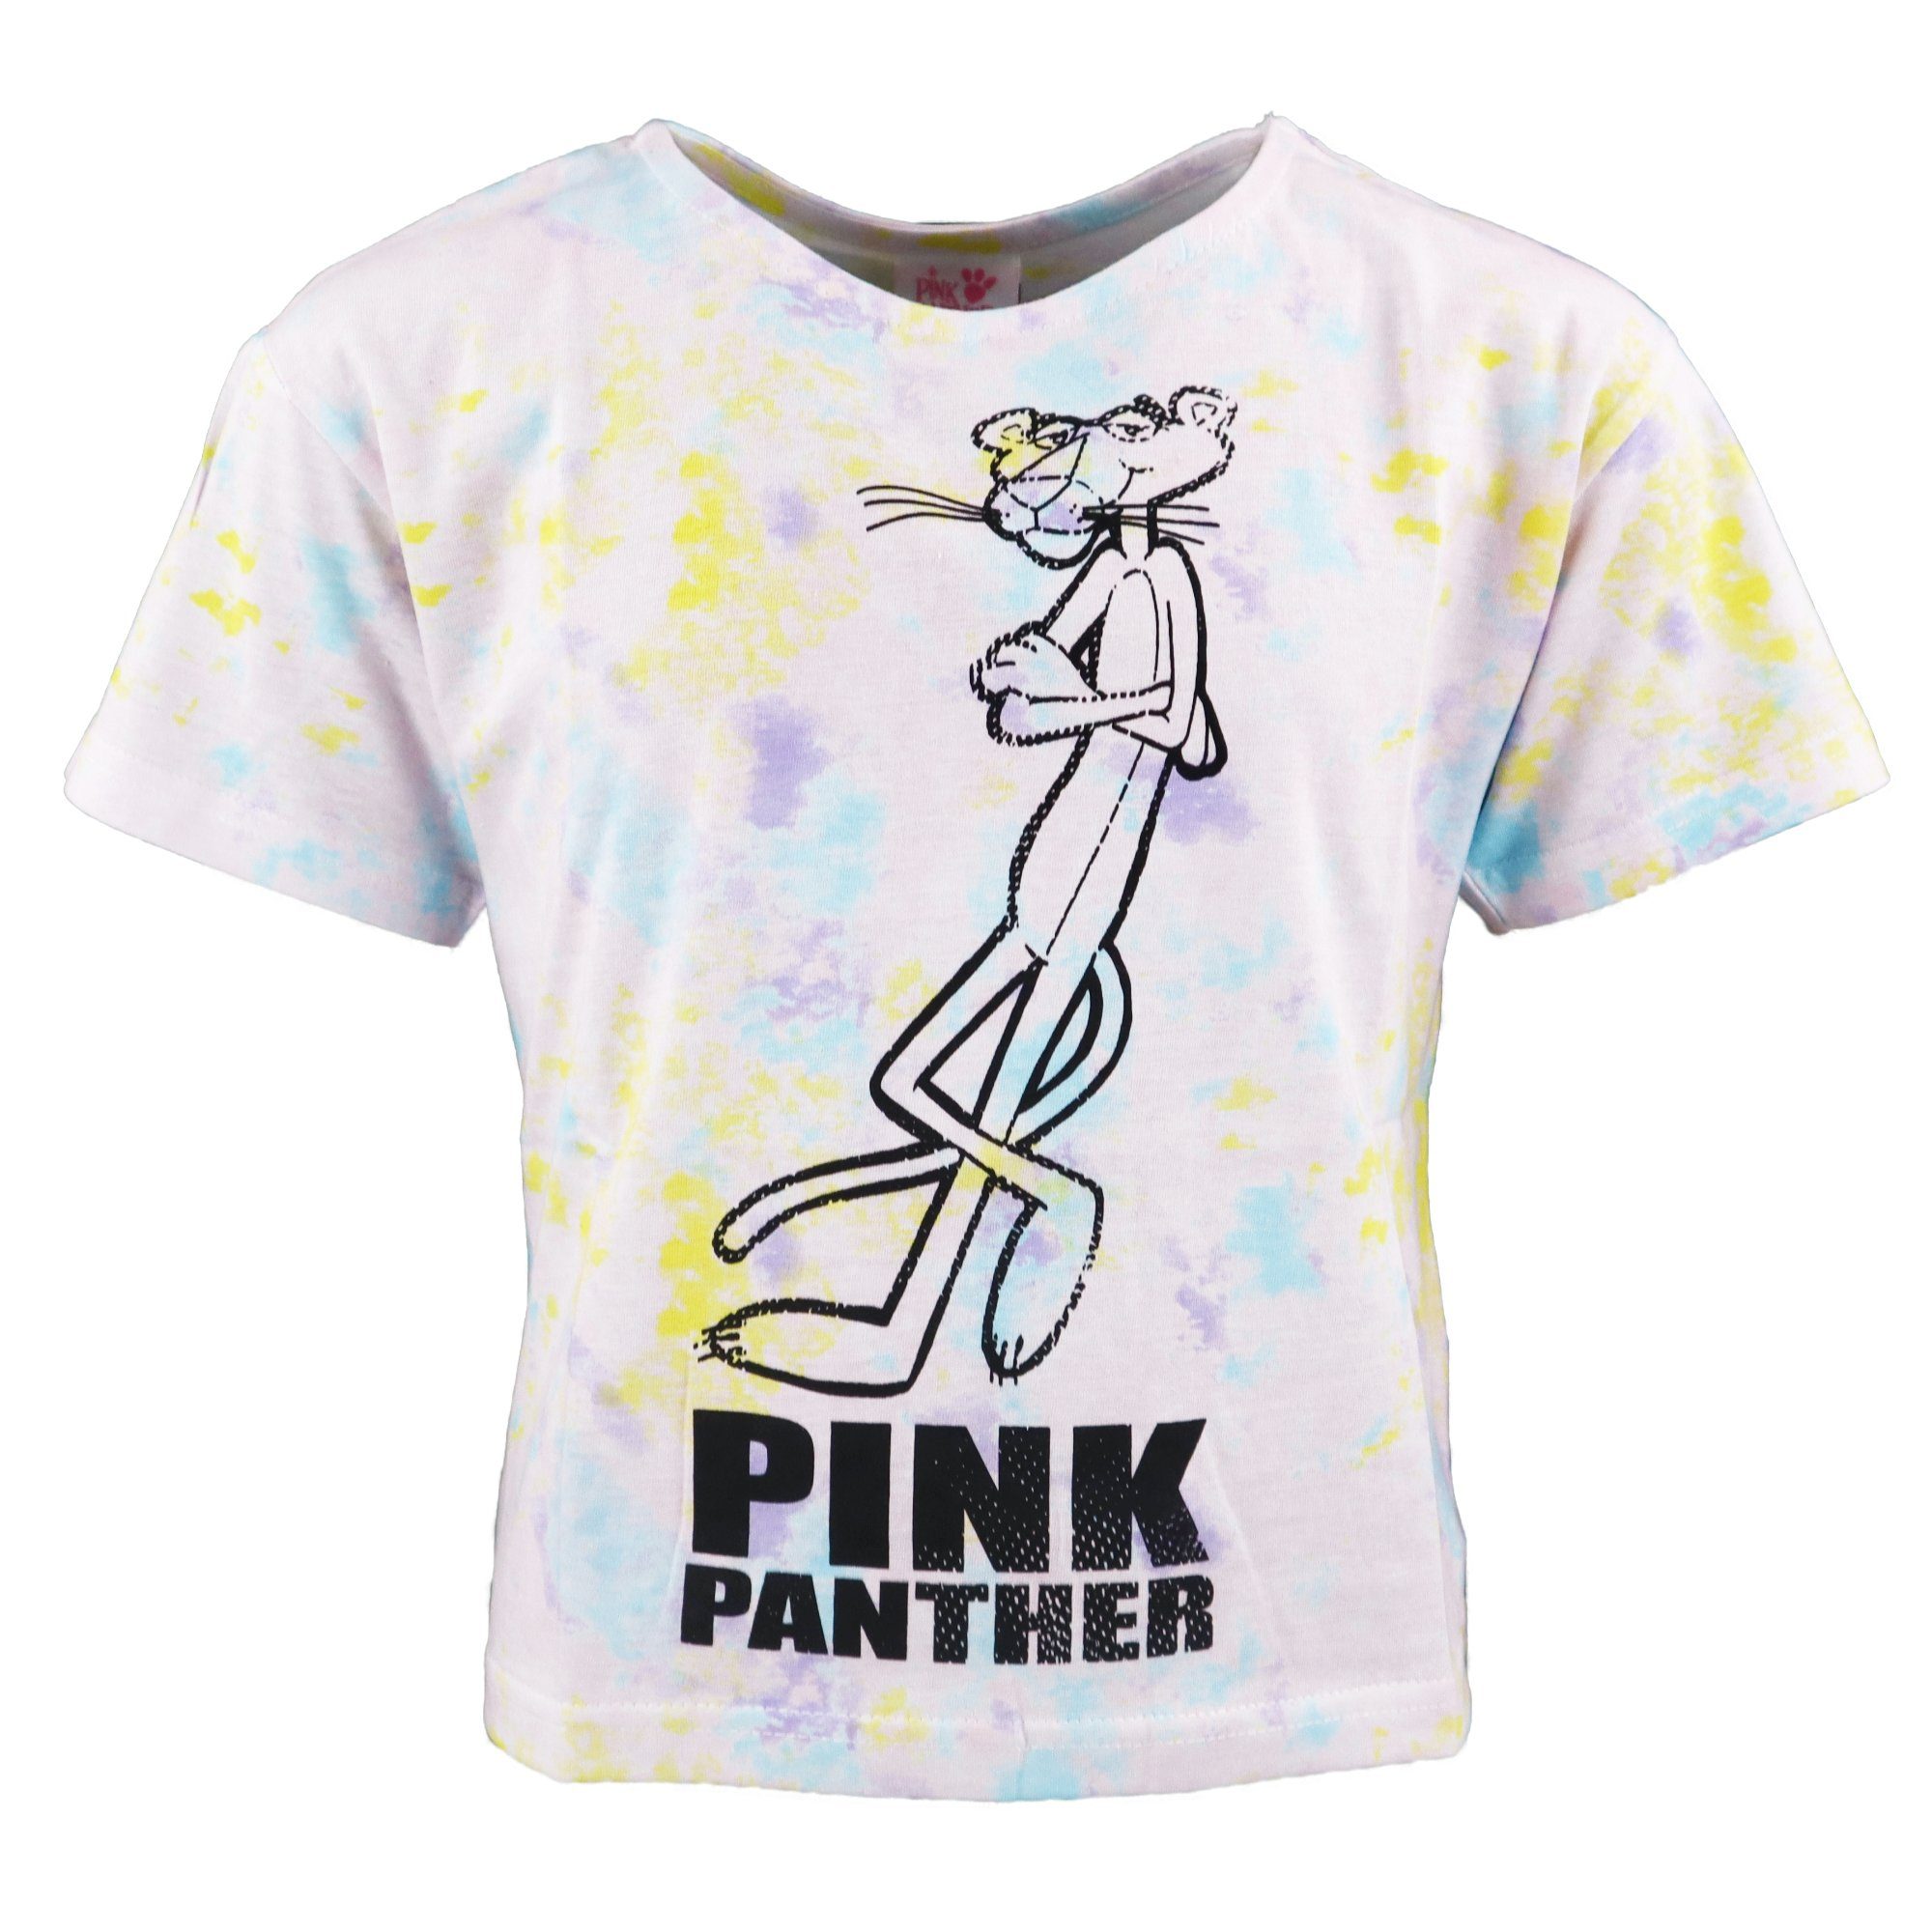 Panther Gr. Bunt Pink Pink Mädchen Print-Shirt Panther T-Shirt 134-164 Jugend